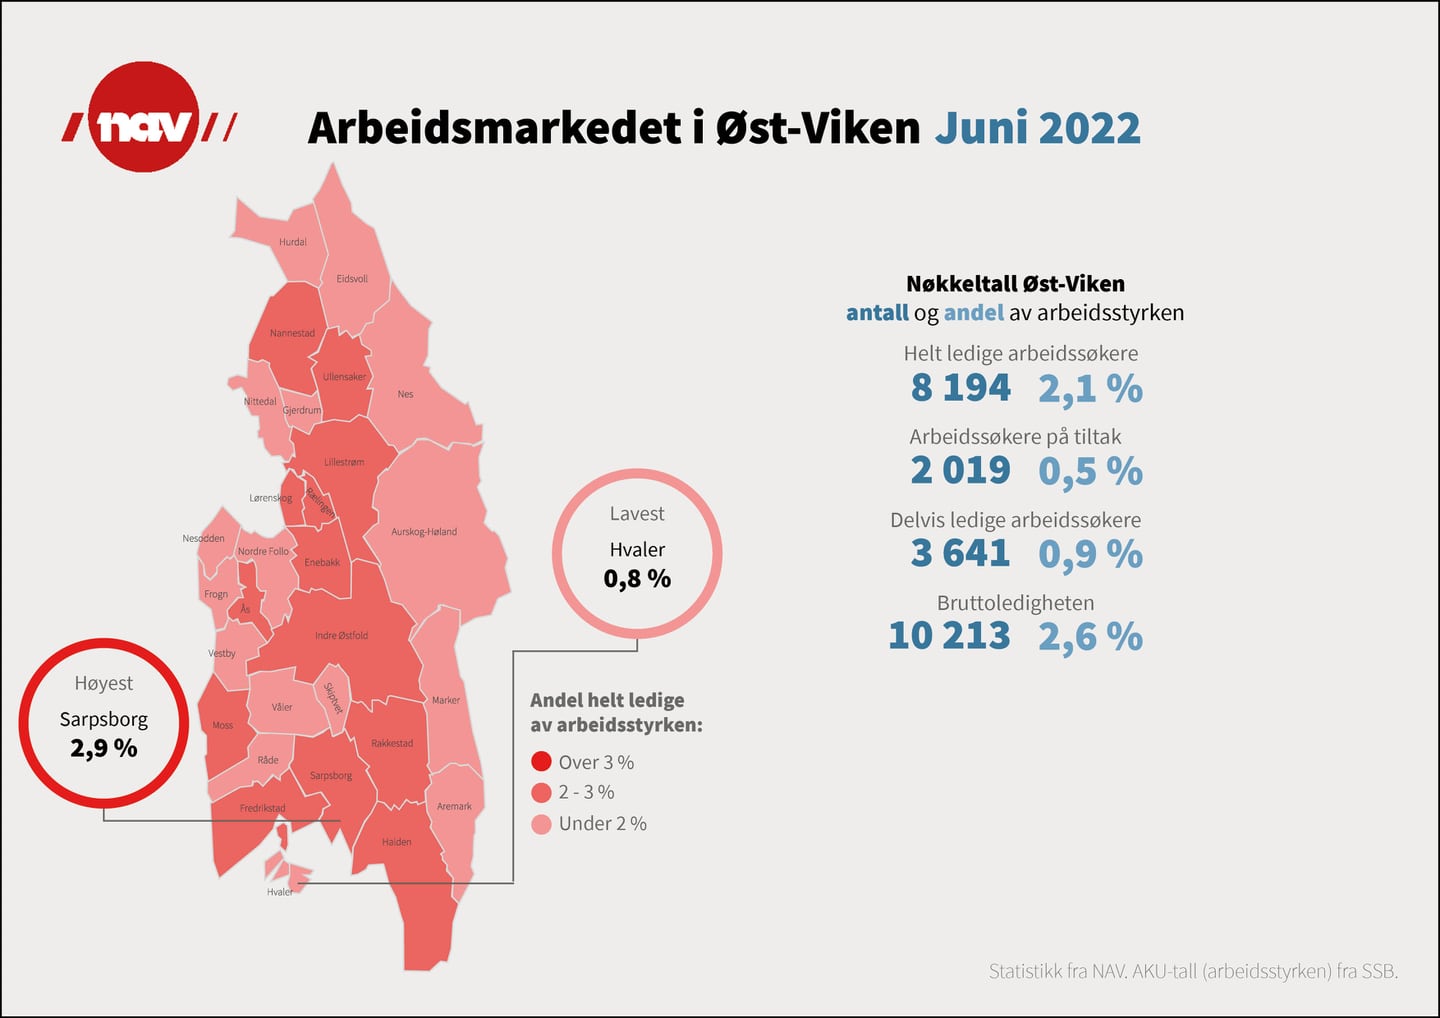 Infografikk med nøkkeltal for arbeidsmarkedet i Øst-Viken ved utgangen av juni 2022.